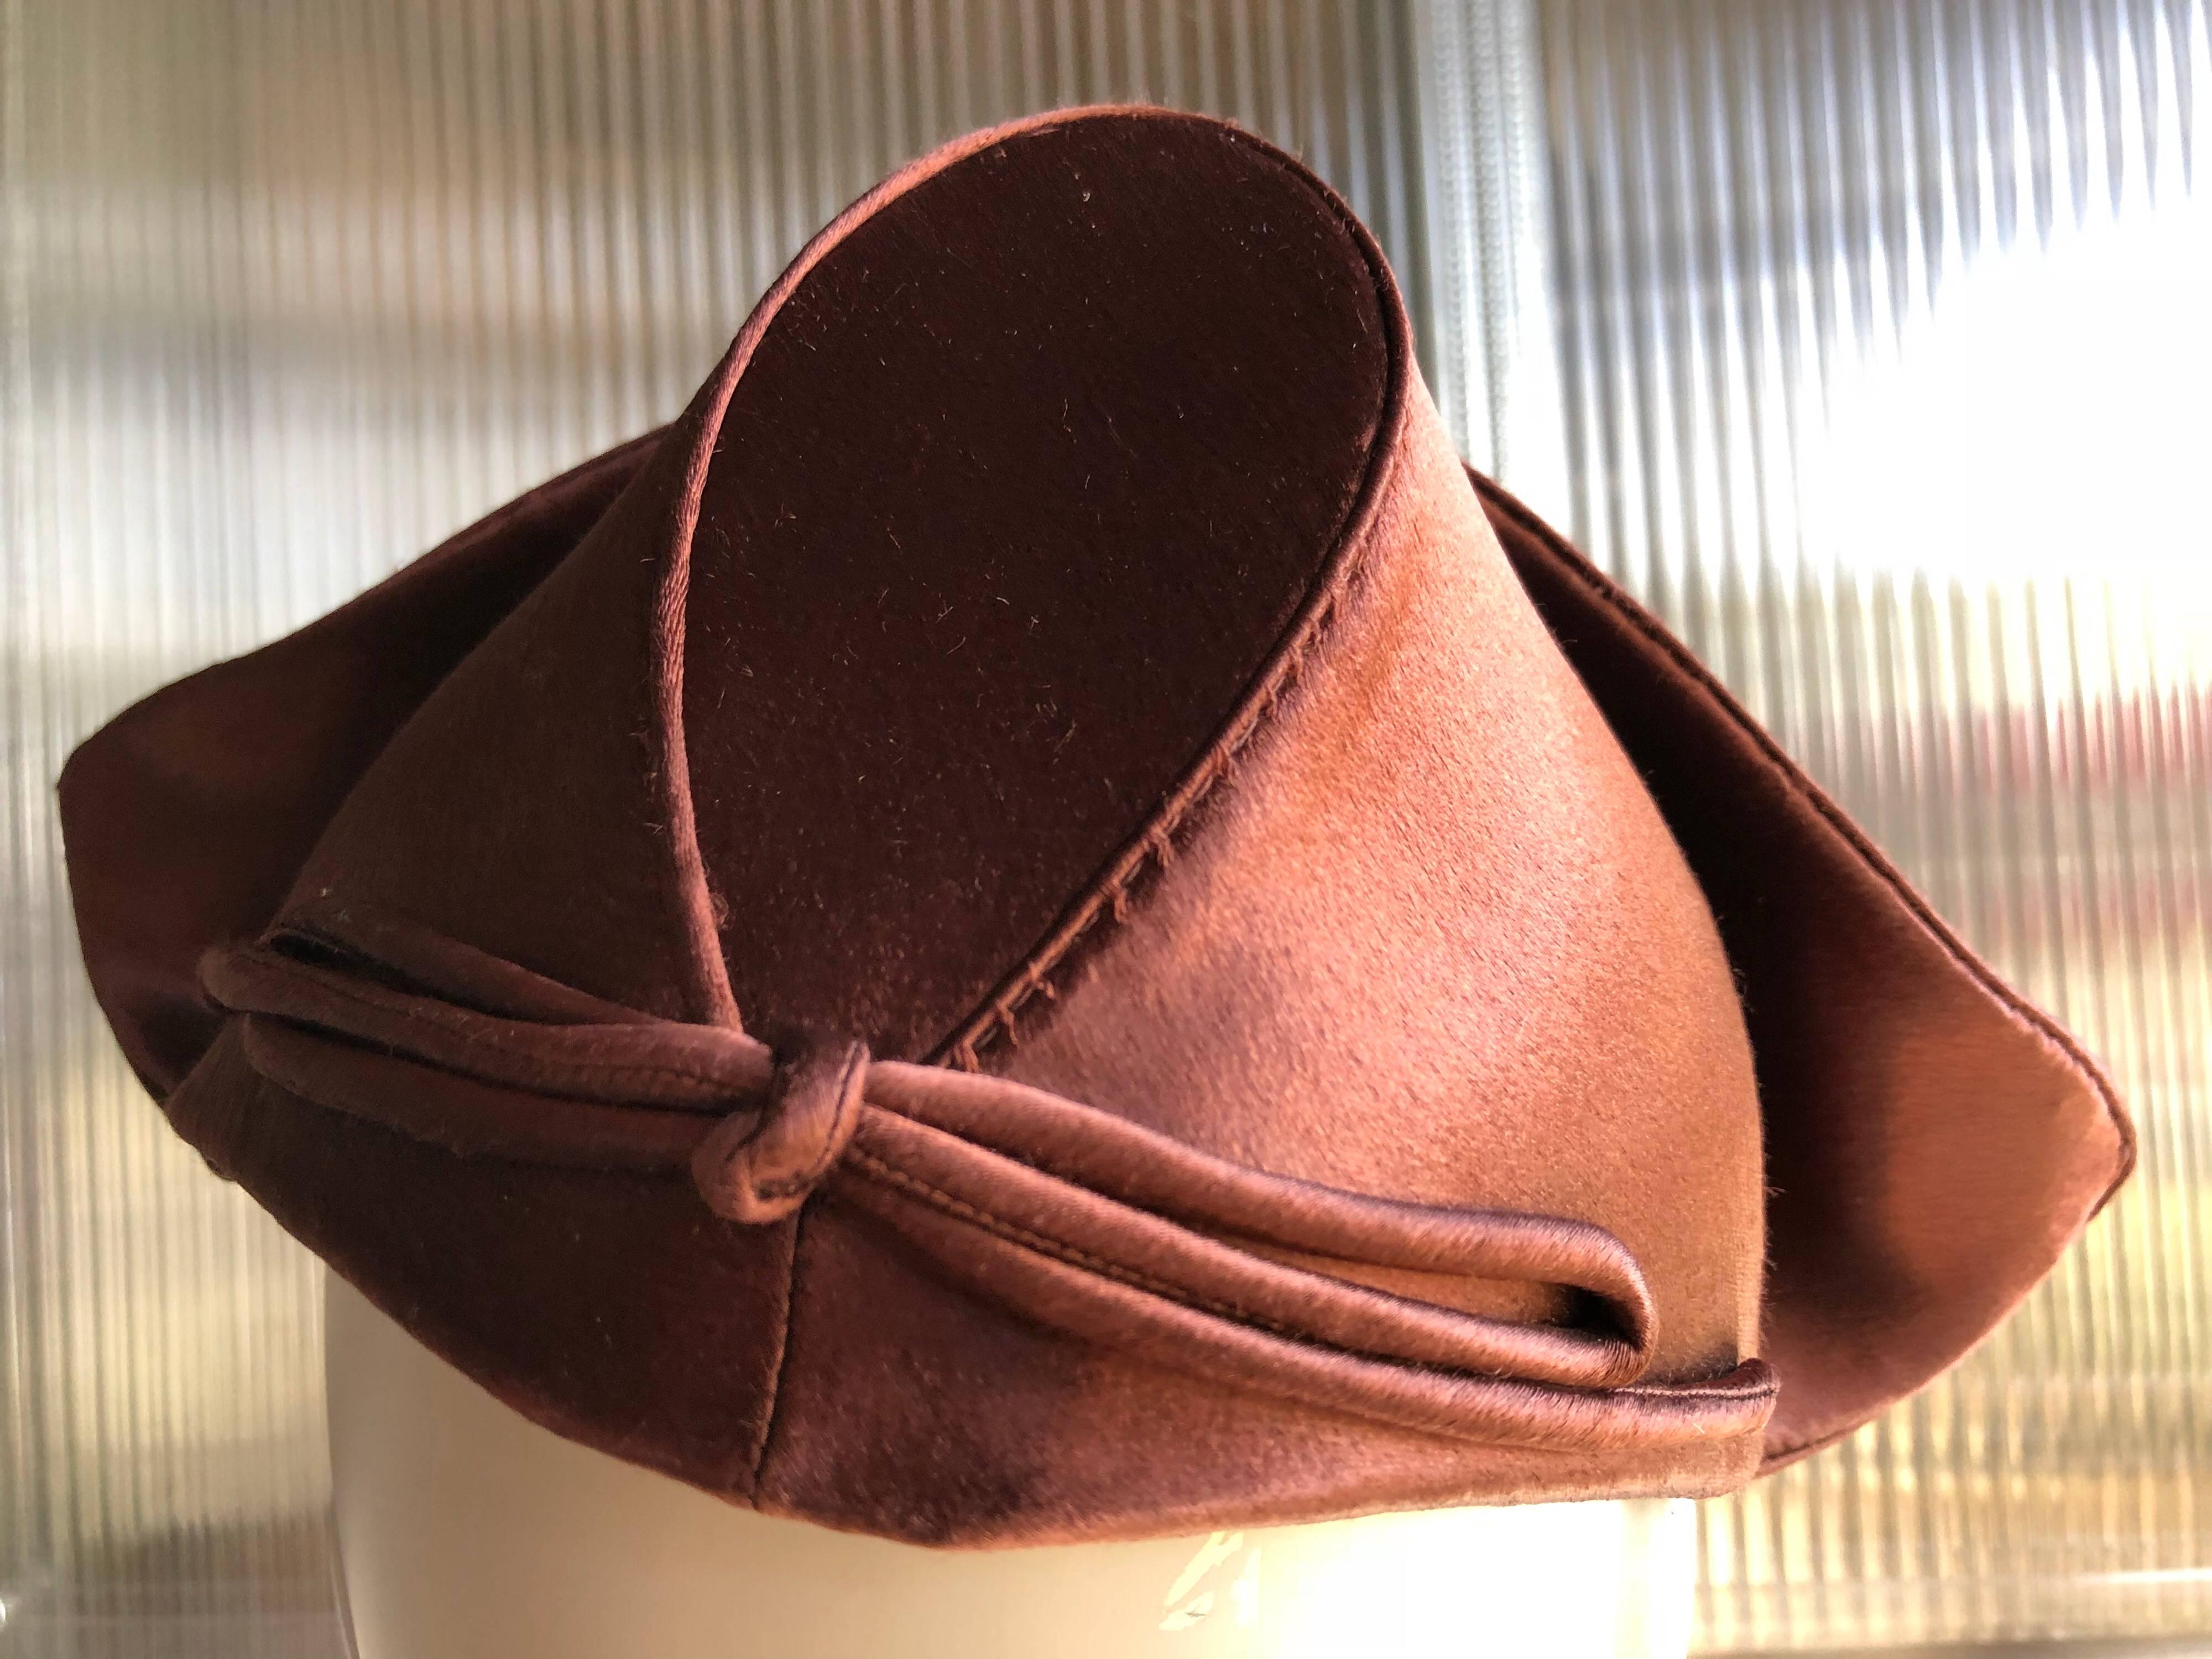 Adorable chapeau de cocktail de style hollandais en satin de soie brun chocolat des années 1940 de Coret of San Francisco, avec des côtés relevés et une couronne structurée en forme de bonnet.  Cousu à la main. Un peigne s'attache à l'intérieur du